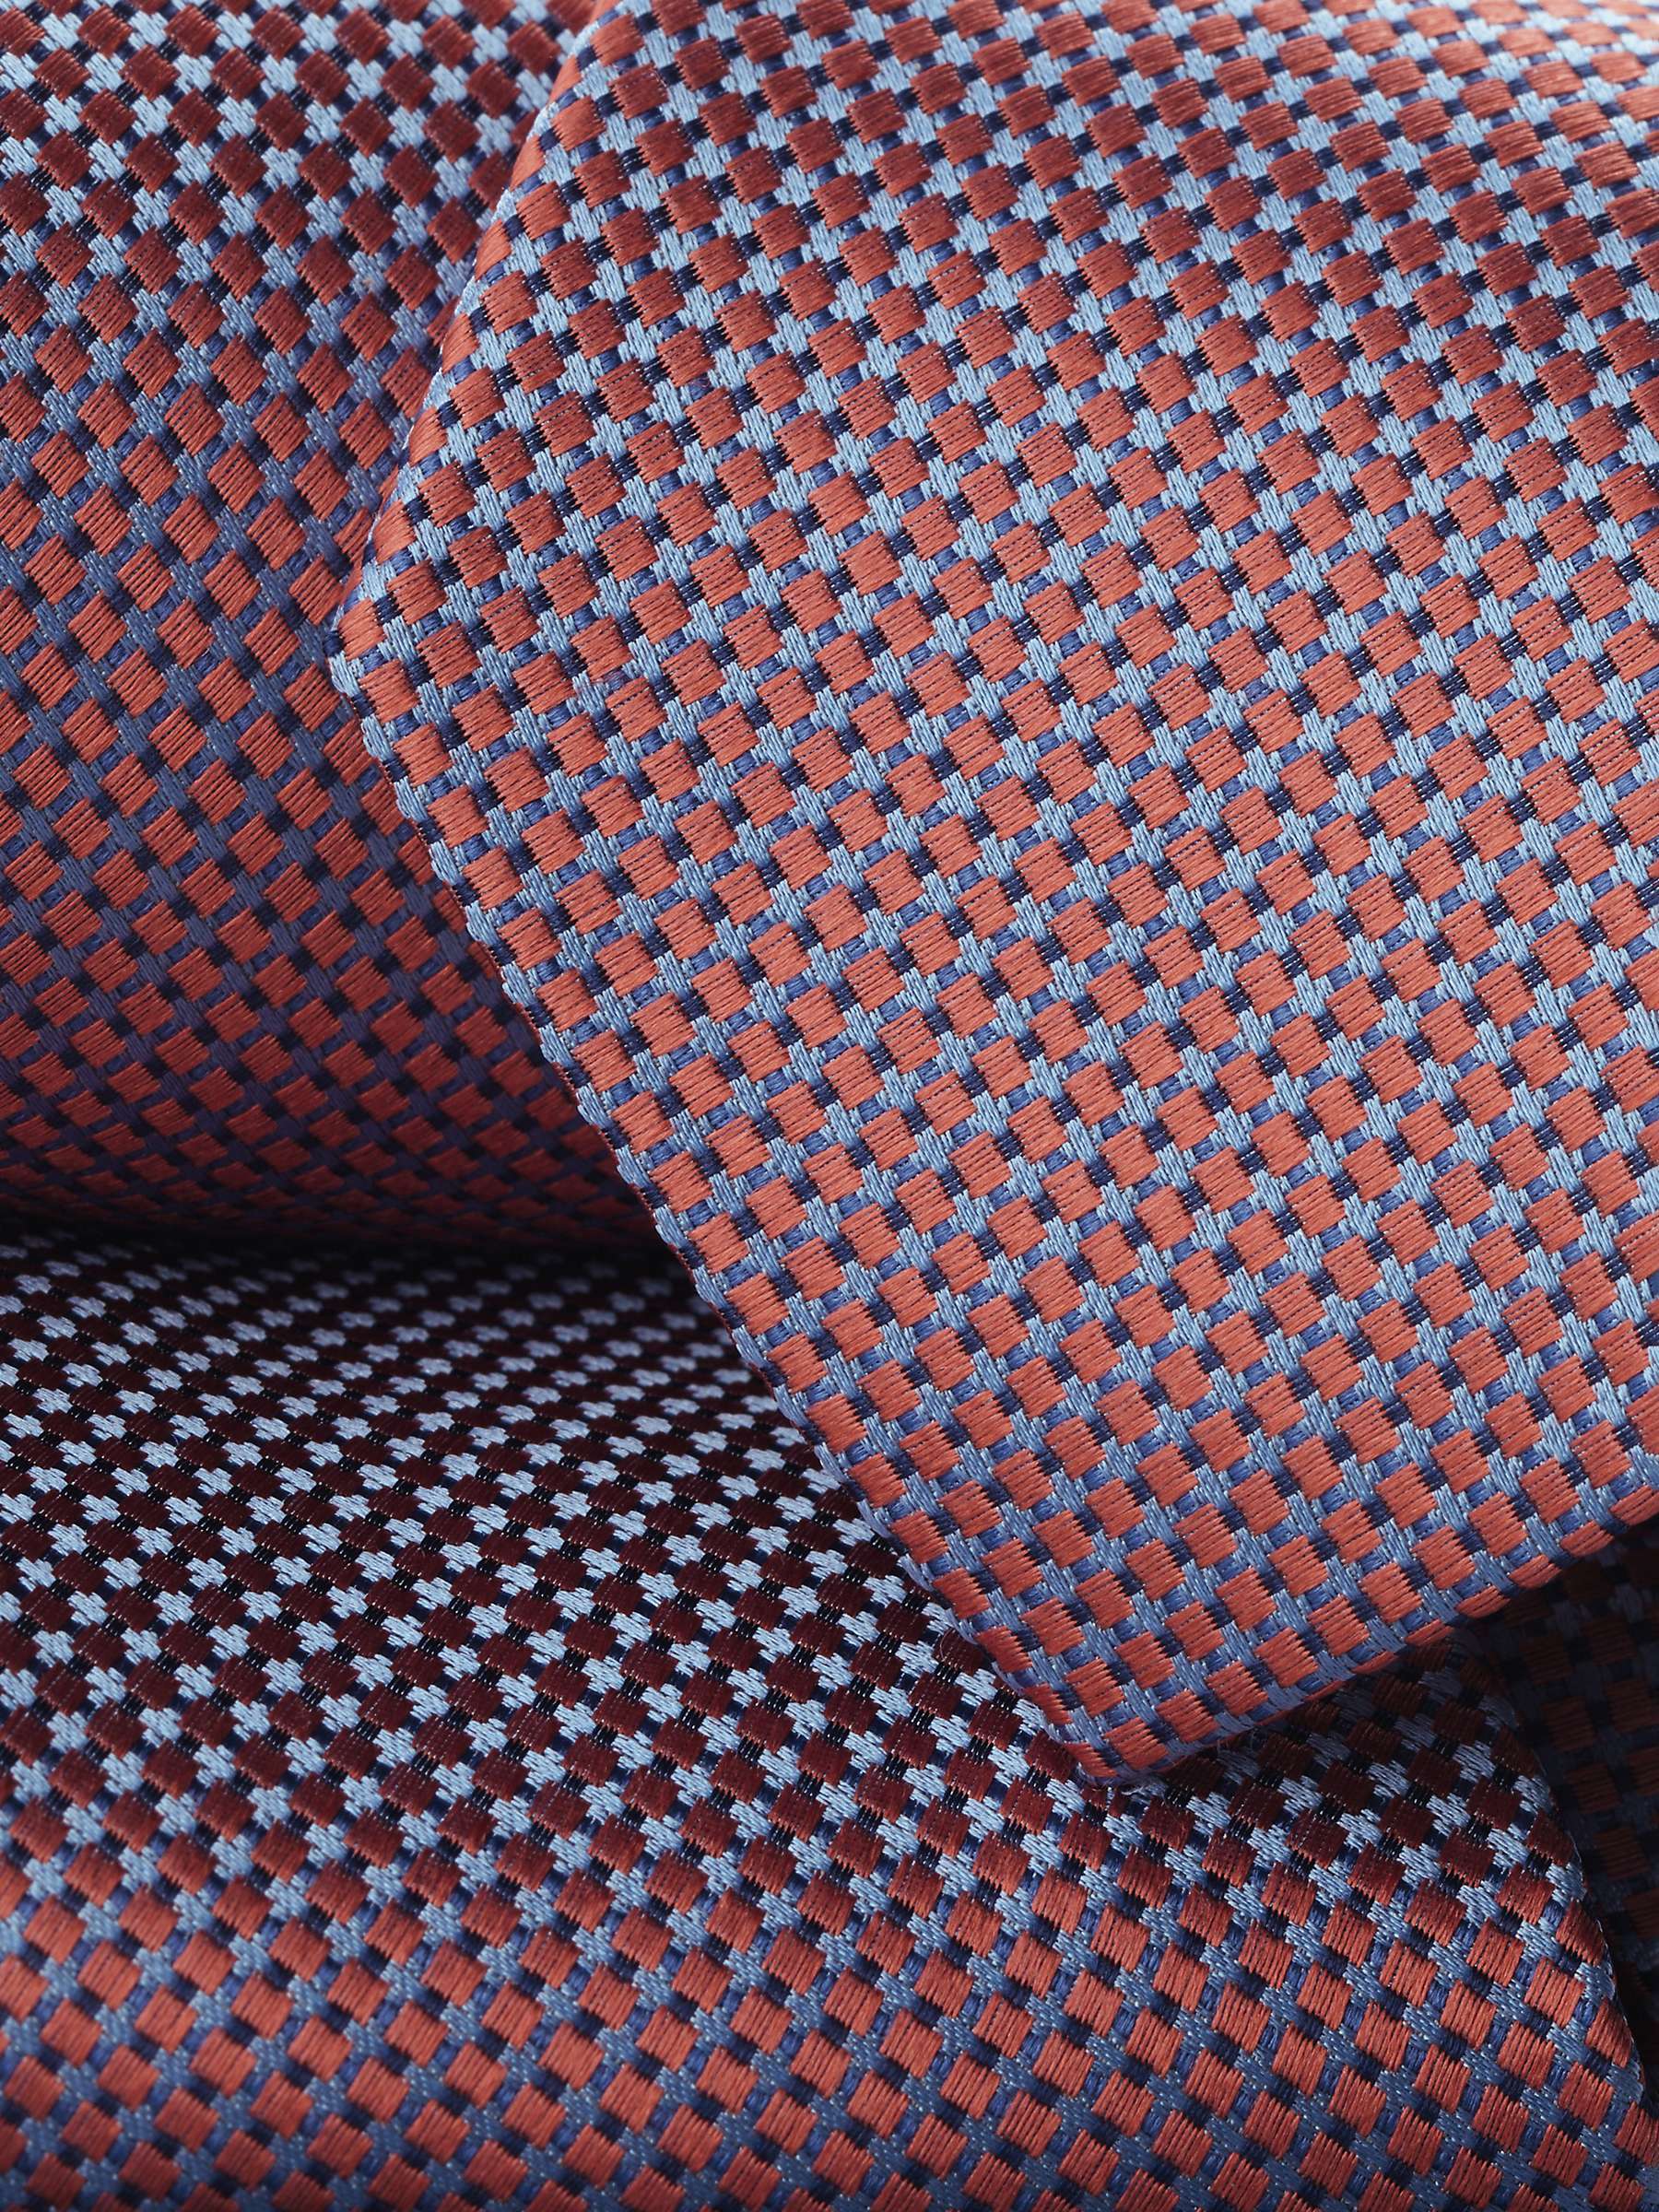 Buy Charles Tyrwhitt Printed Silk Tie Online at johnlewis.com